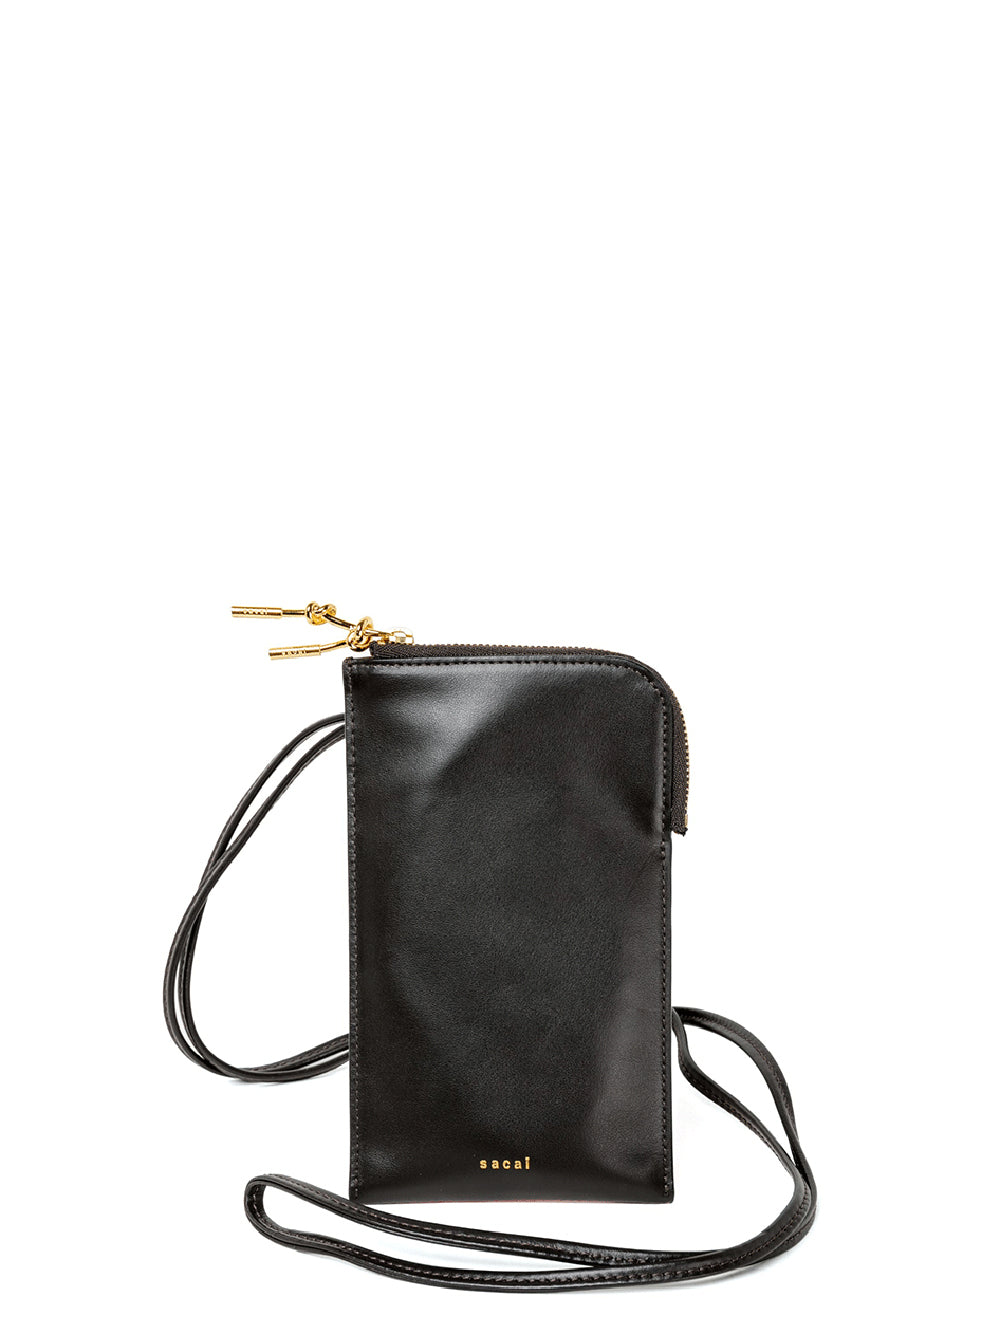 低価即納bi-color leather mobile pouch ライム×ゴールド バッグ